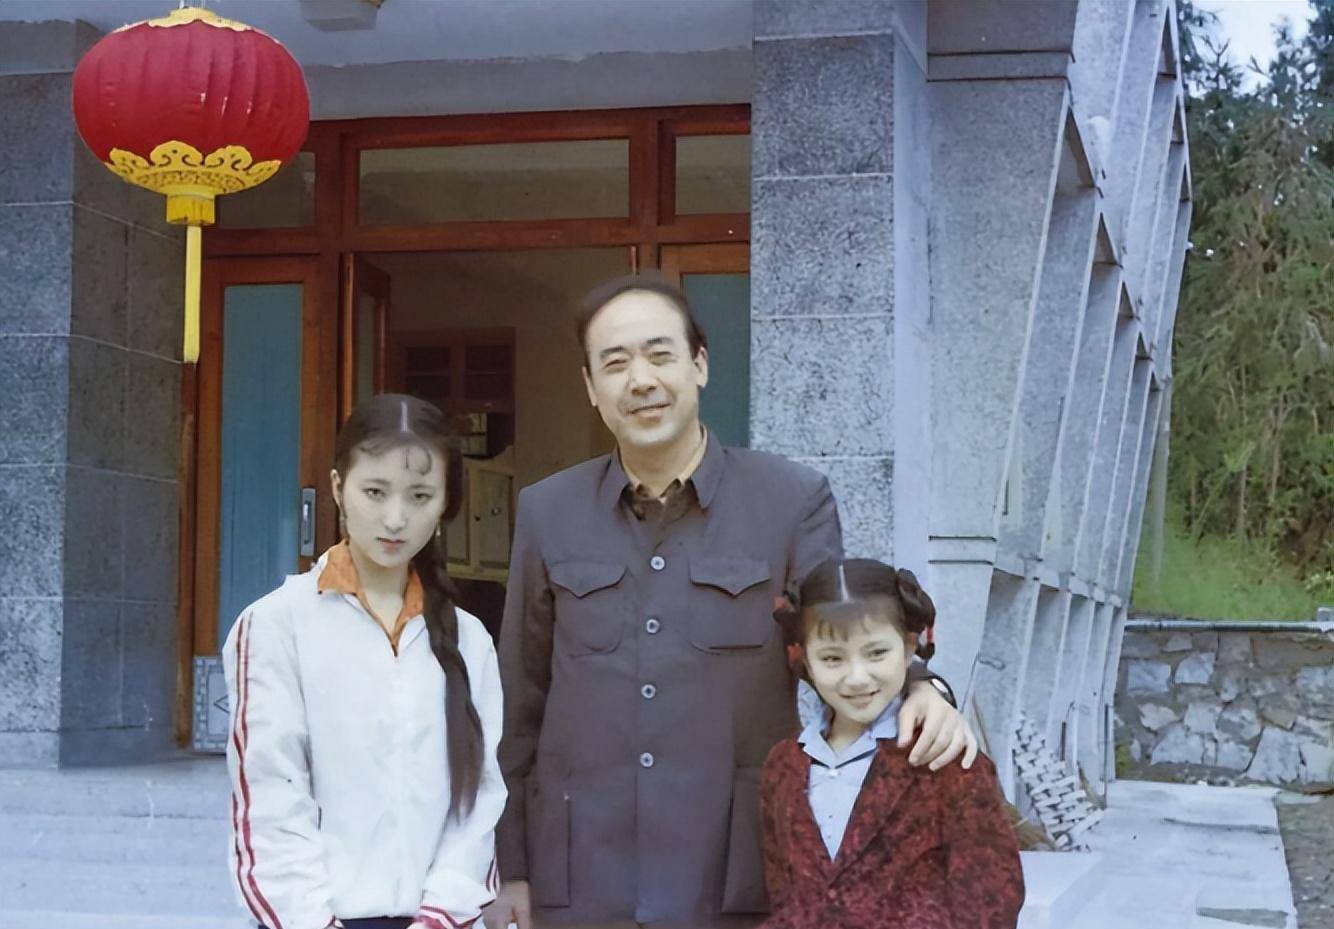 演员陈晓旭:去世16年后,丈夫还俗再婚,父母的坚持让人泪目